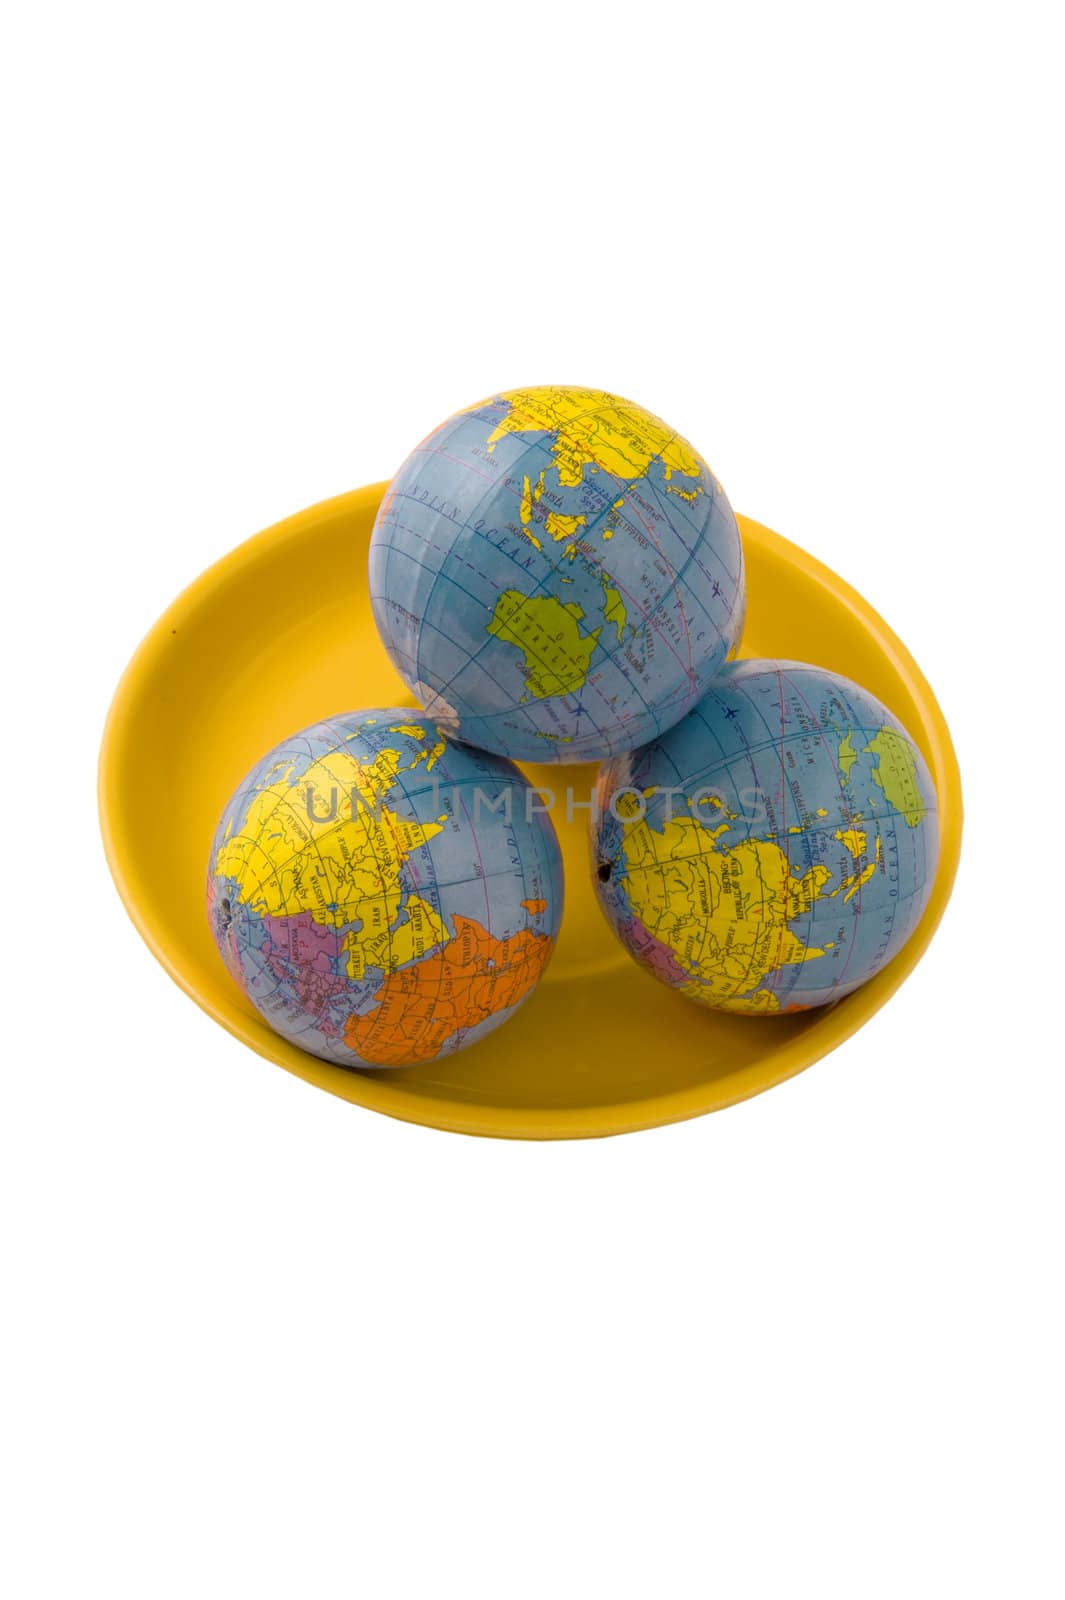 Three globes by Alenmax